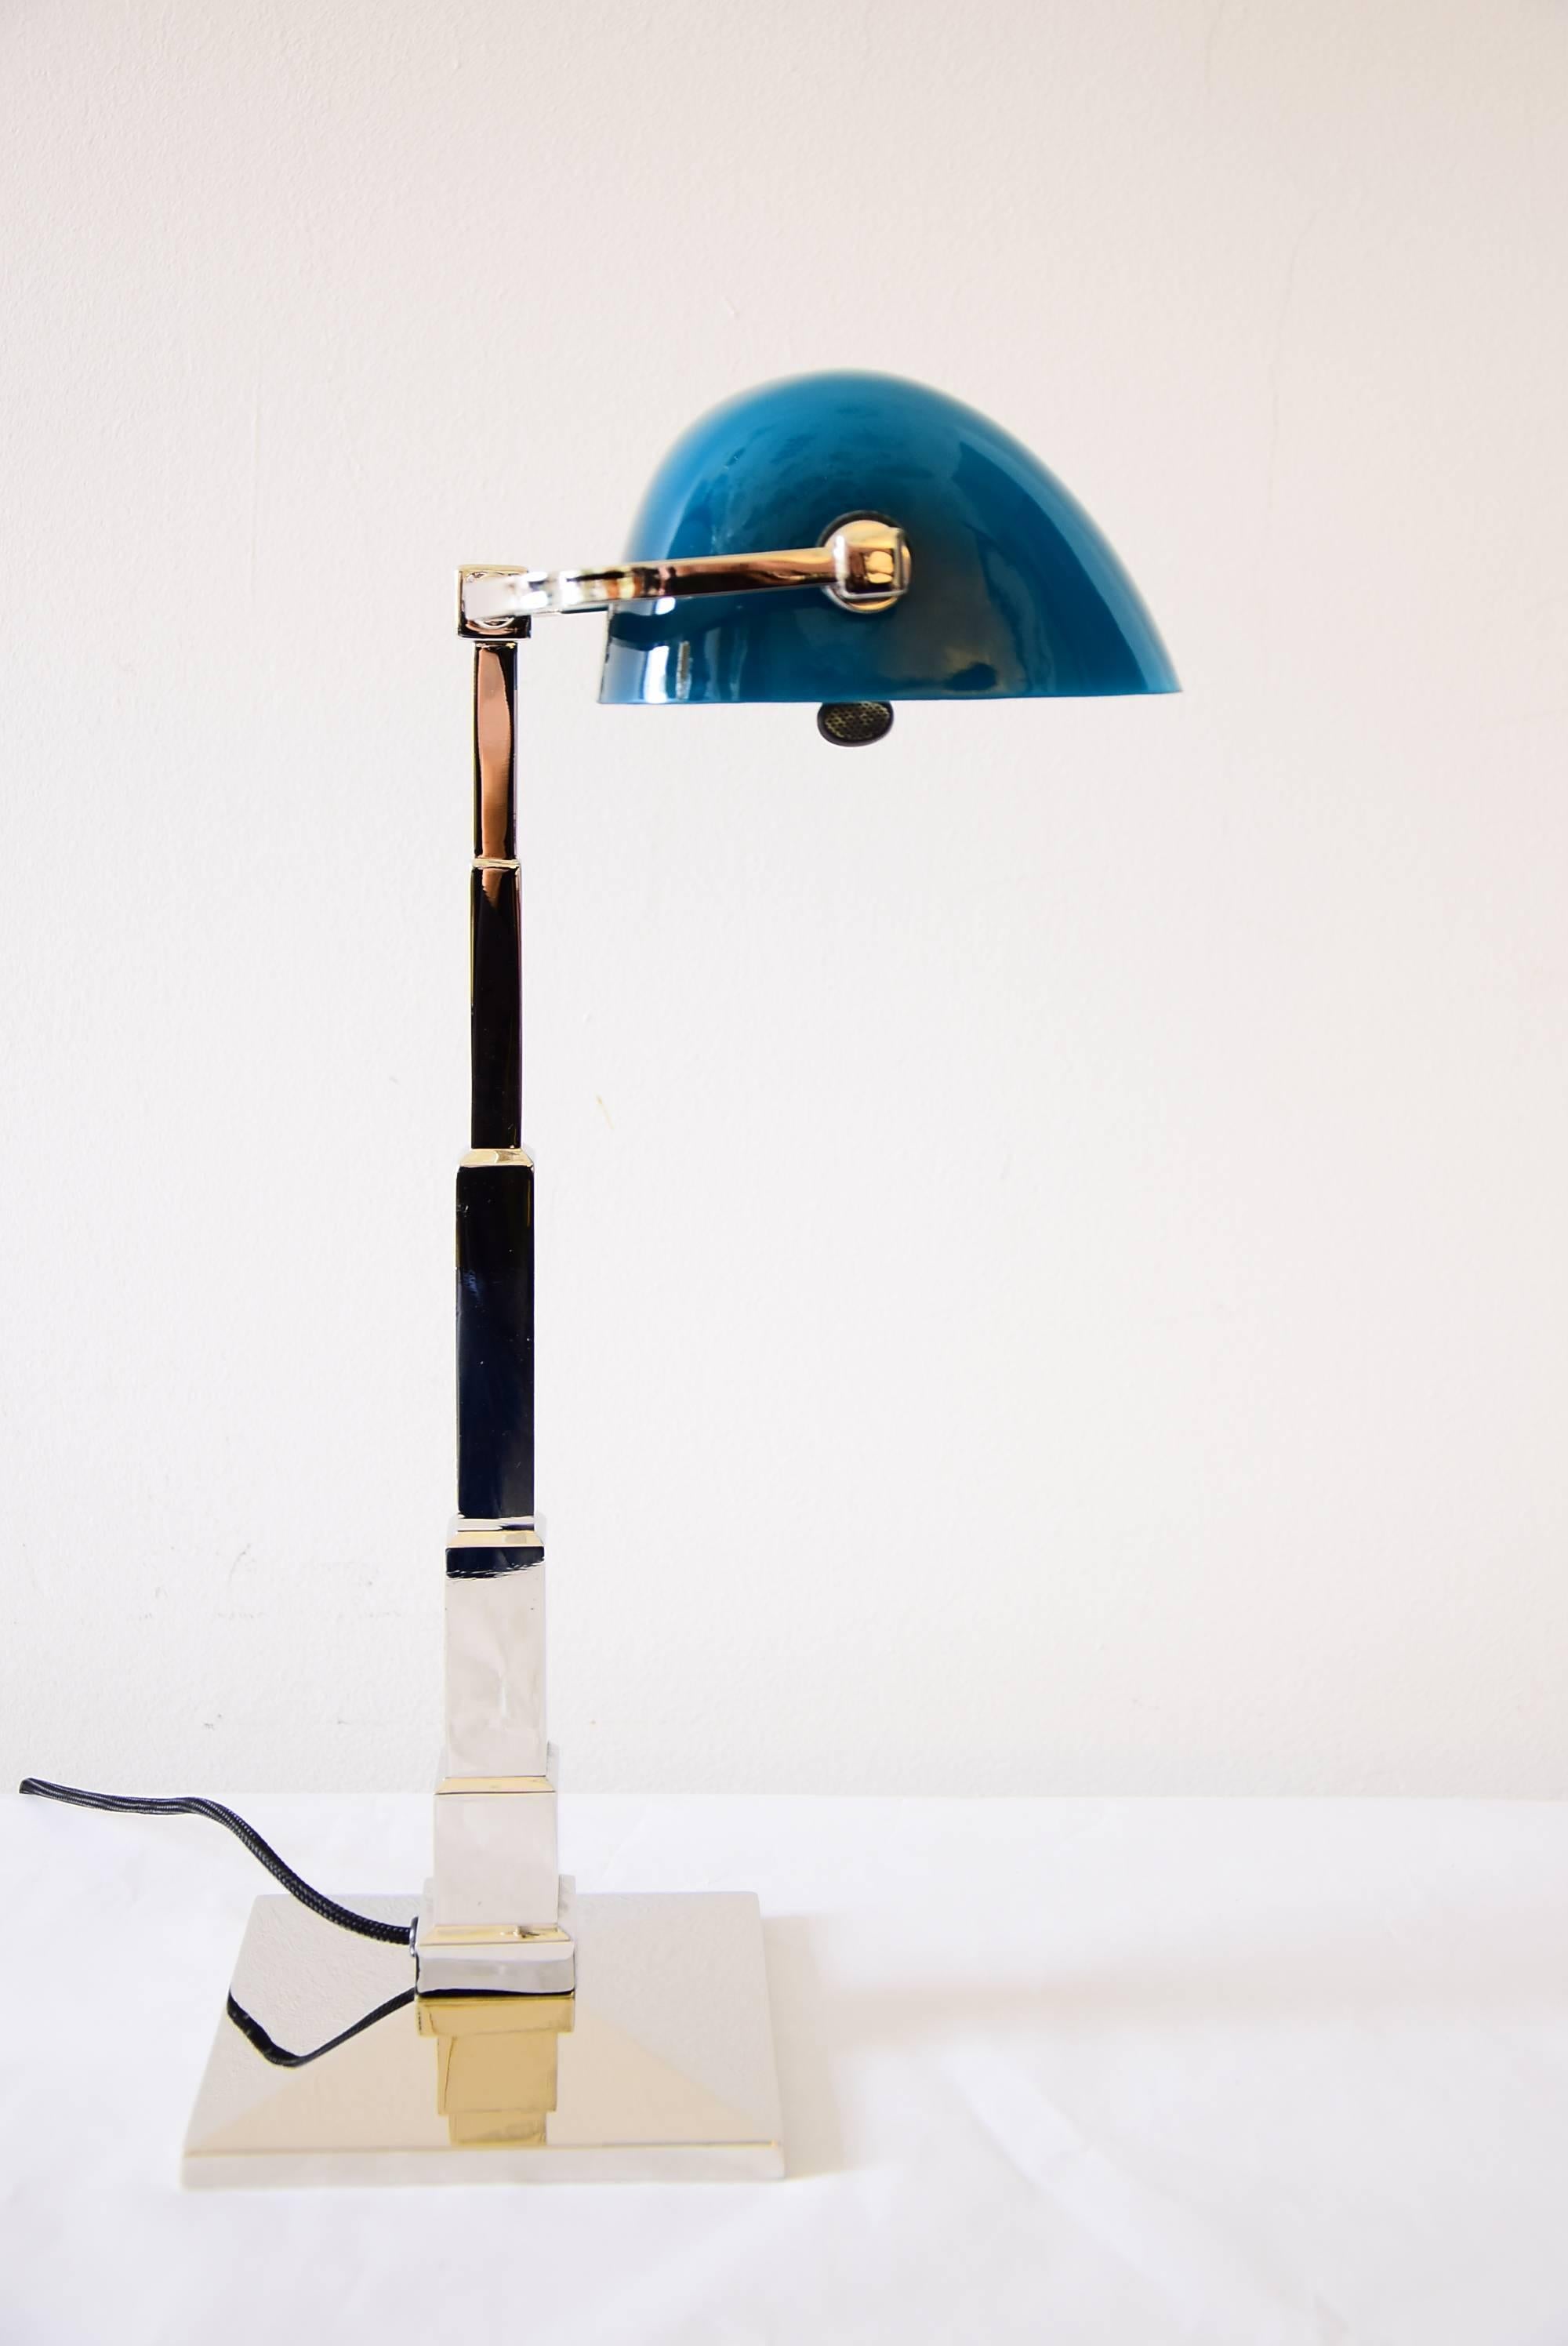 Jugendstil Banker's Desk Lamp Nickel Platend with Green-Blue Glass